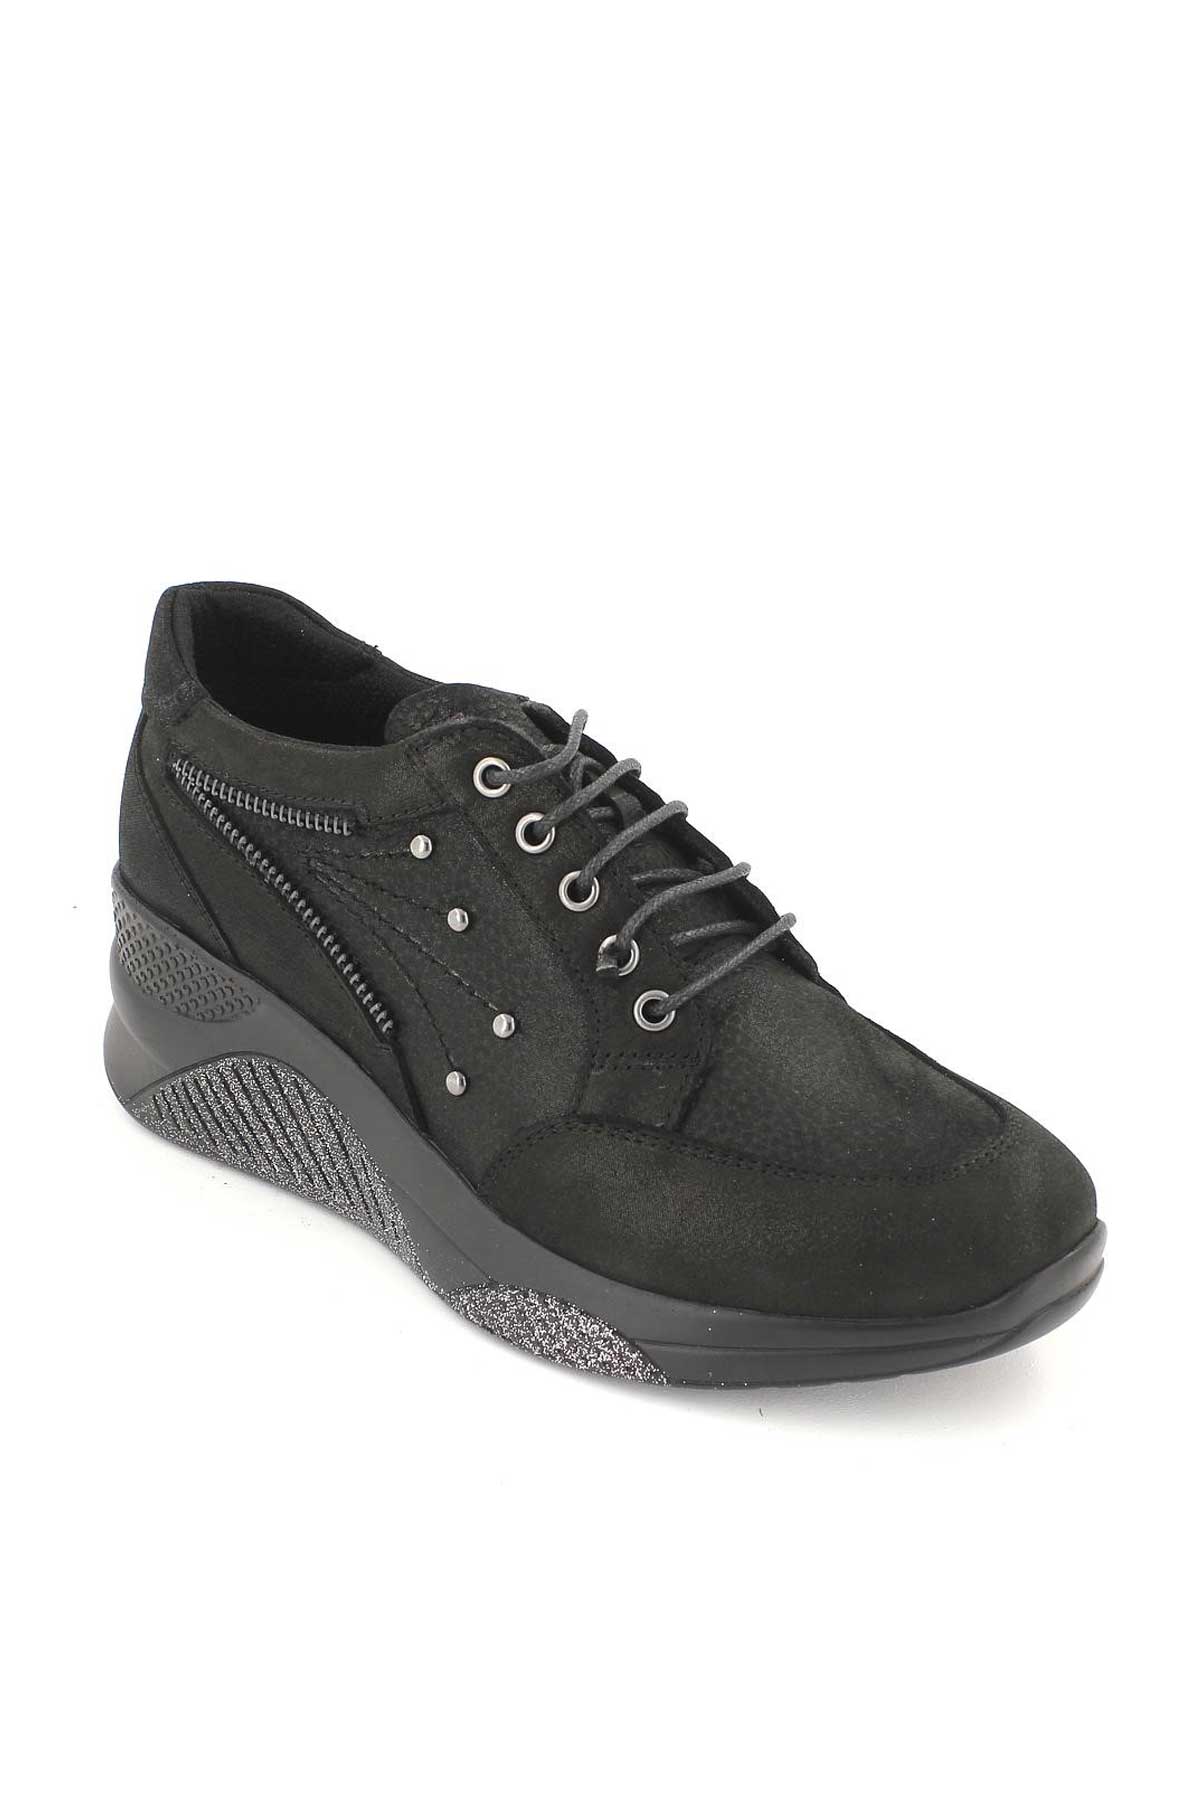 Kadın Deri Sneakers Siyah 1856005K - Thumbnail